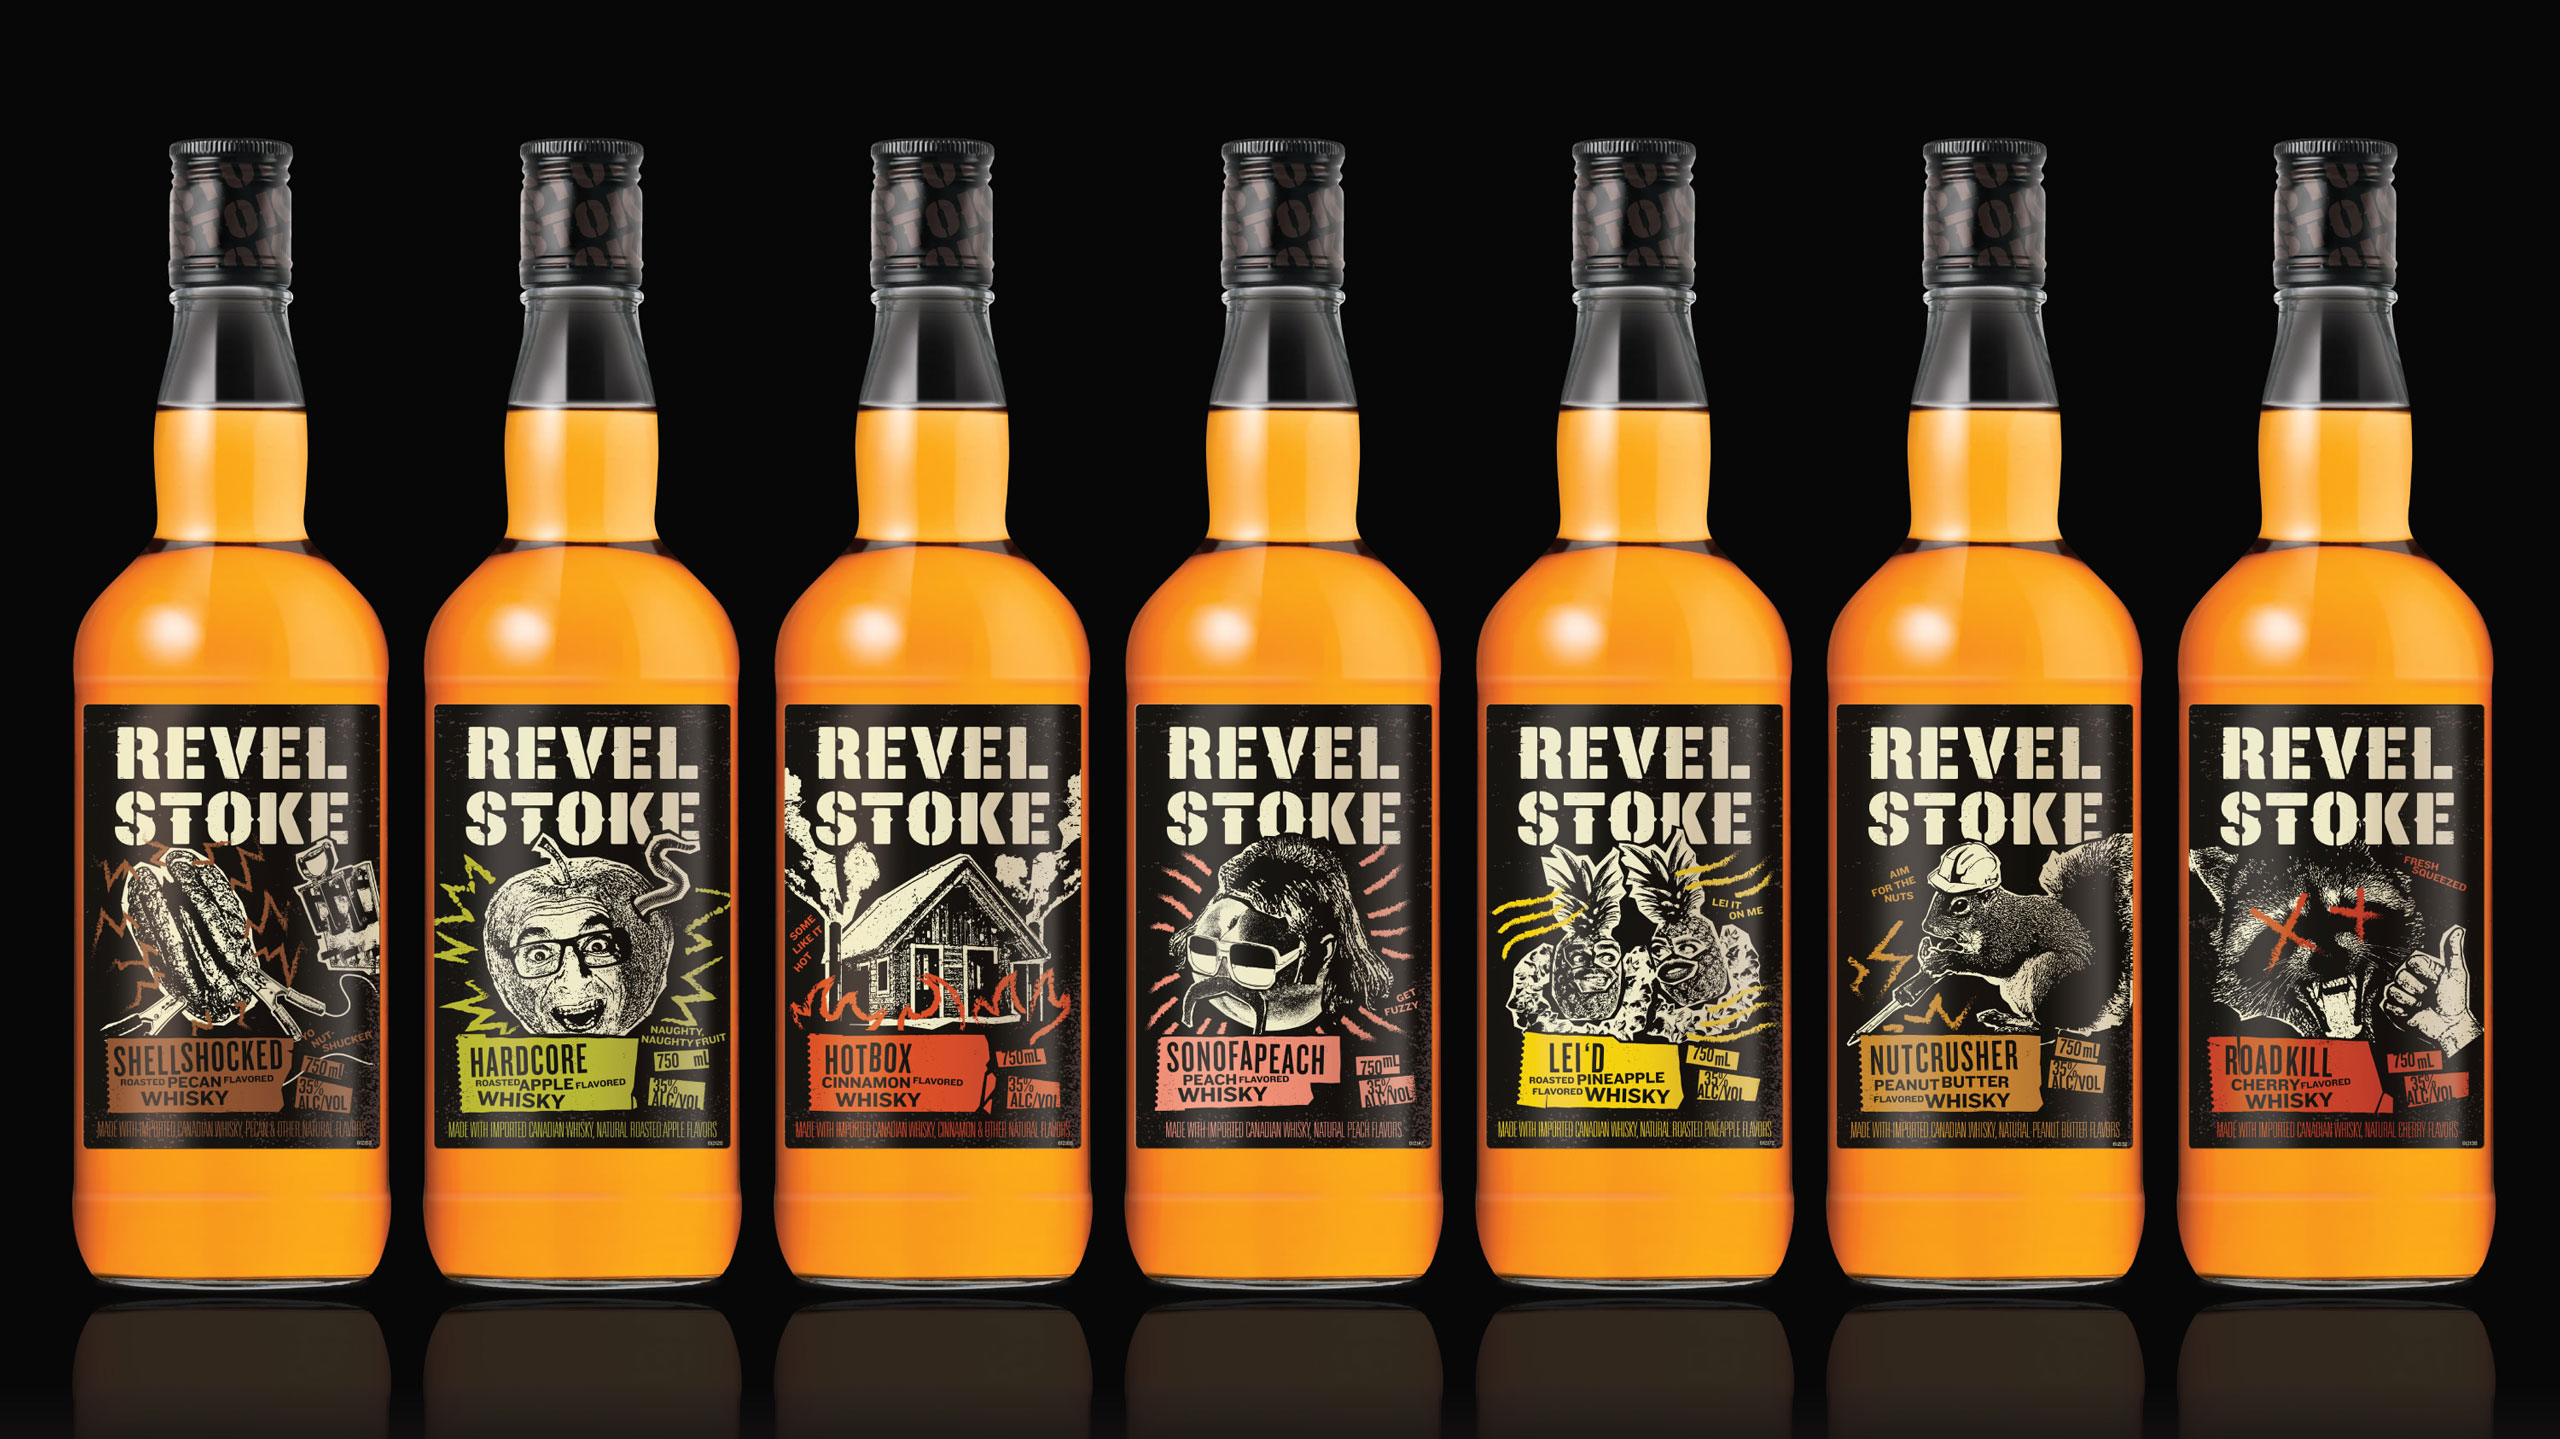 Seven bottles of Revel Stoke whisky in a row